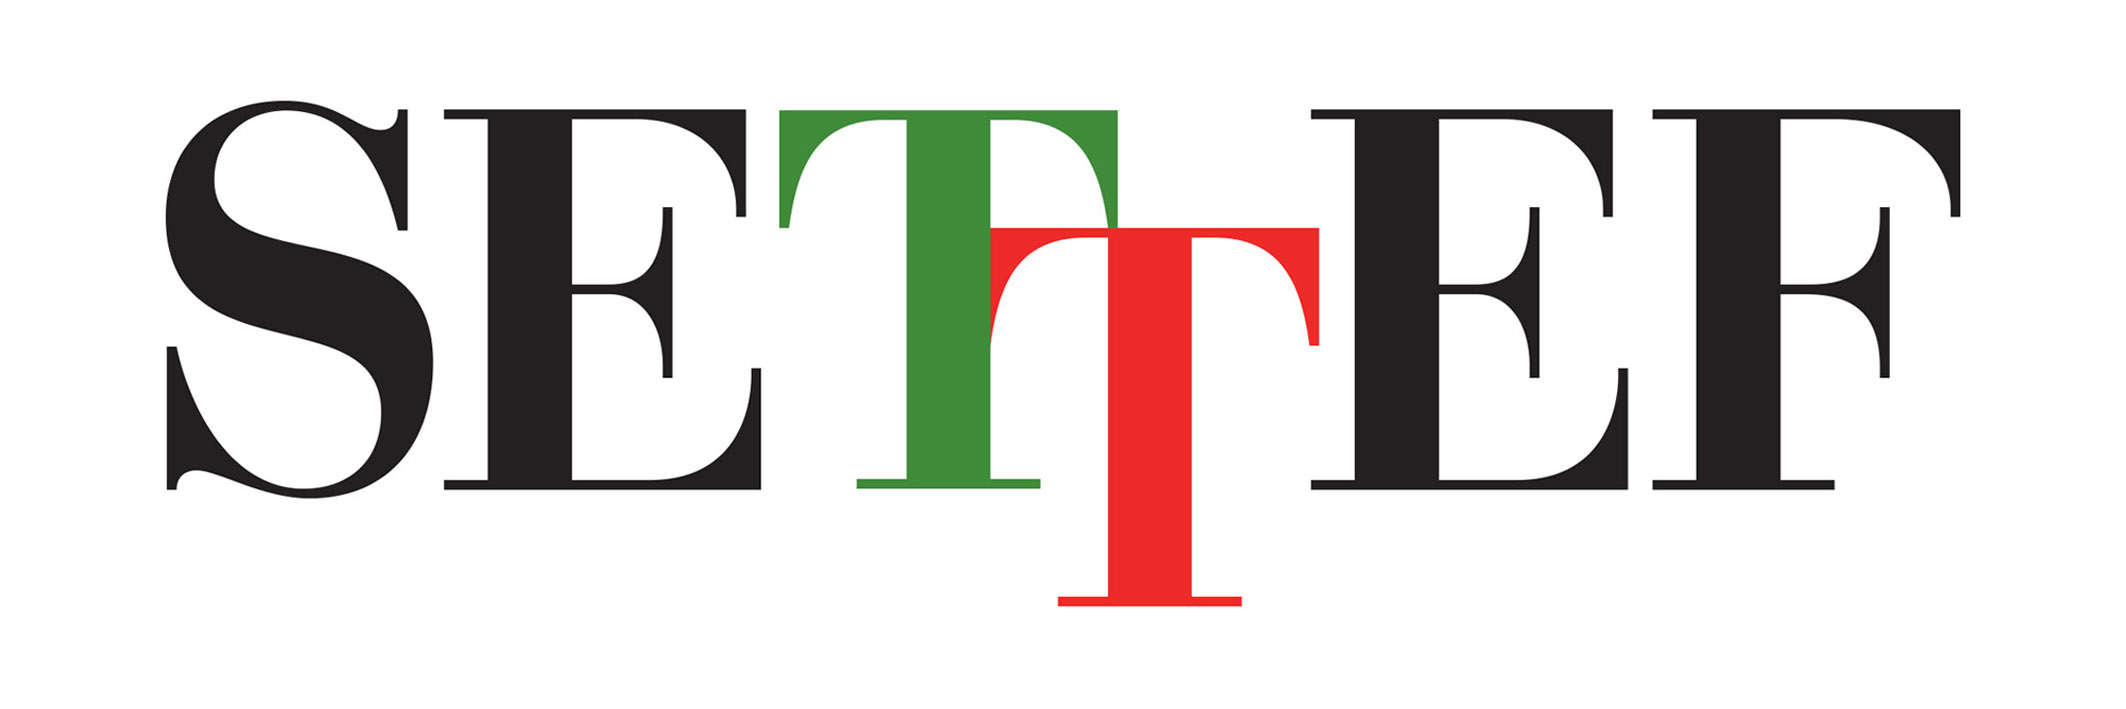 Logo Settef